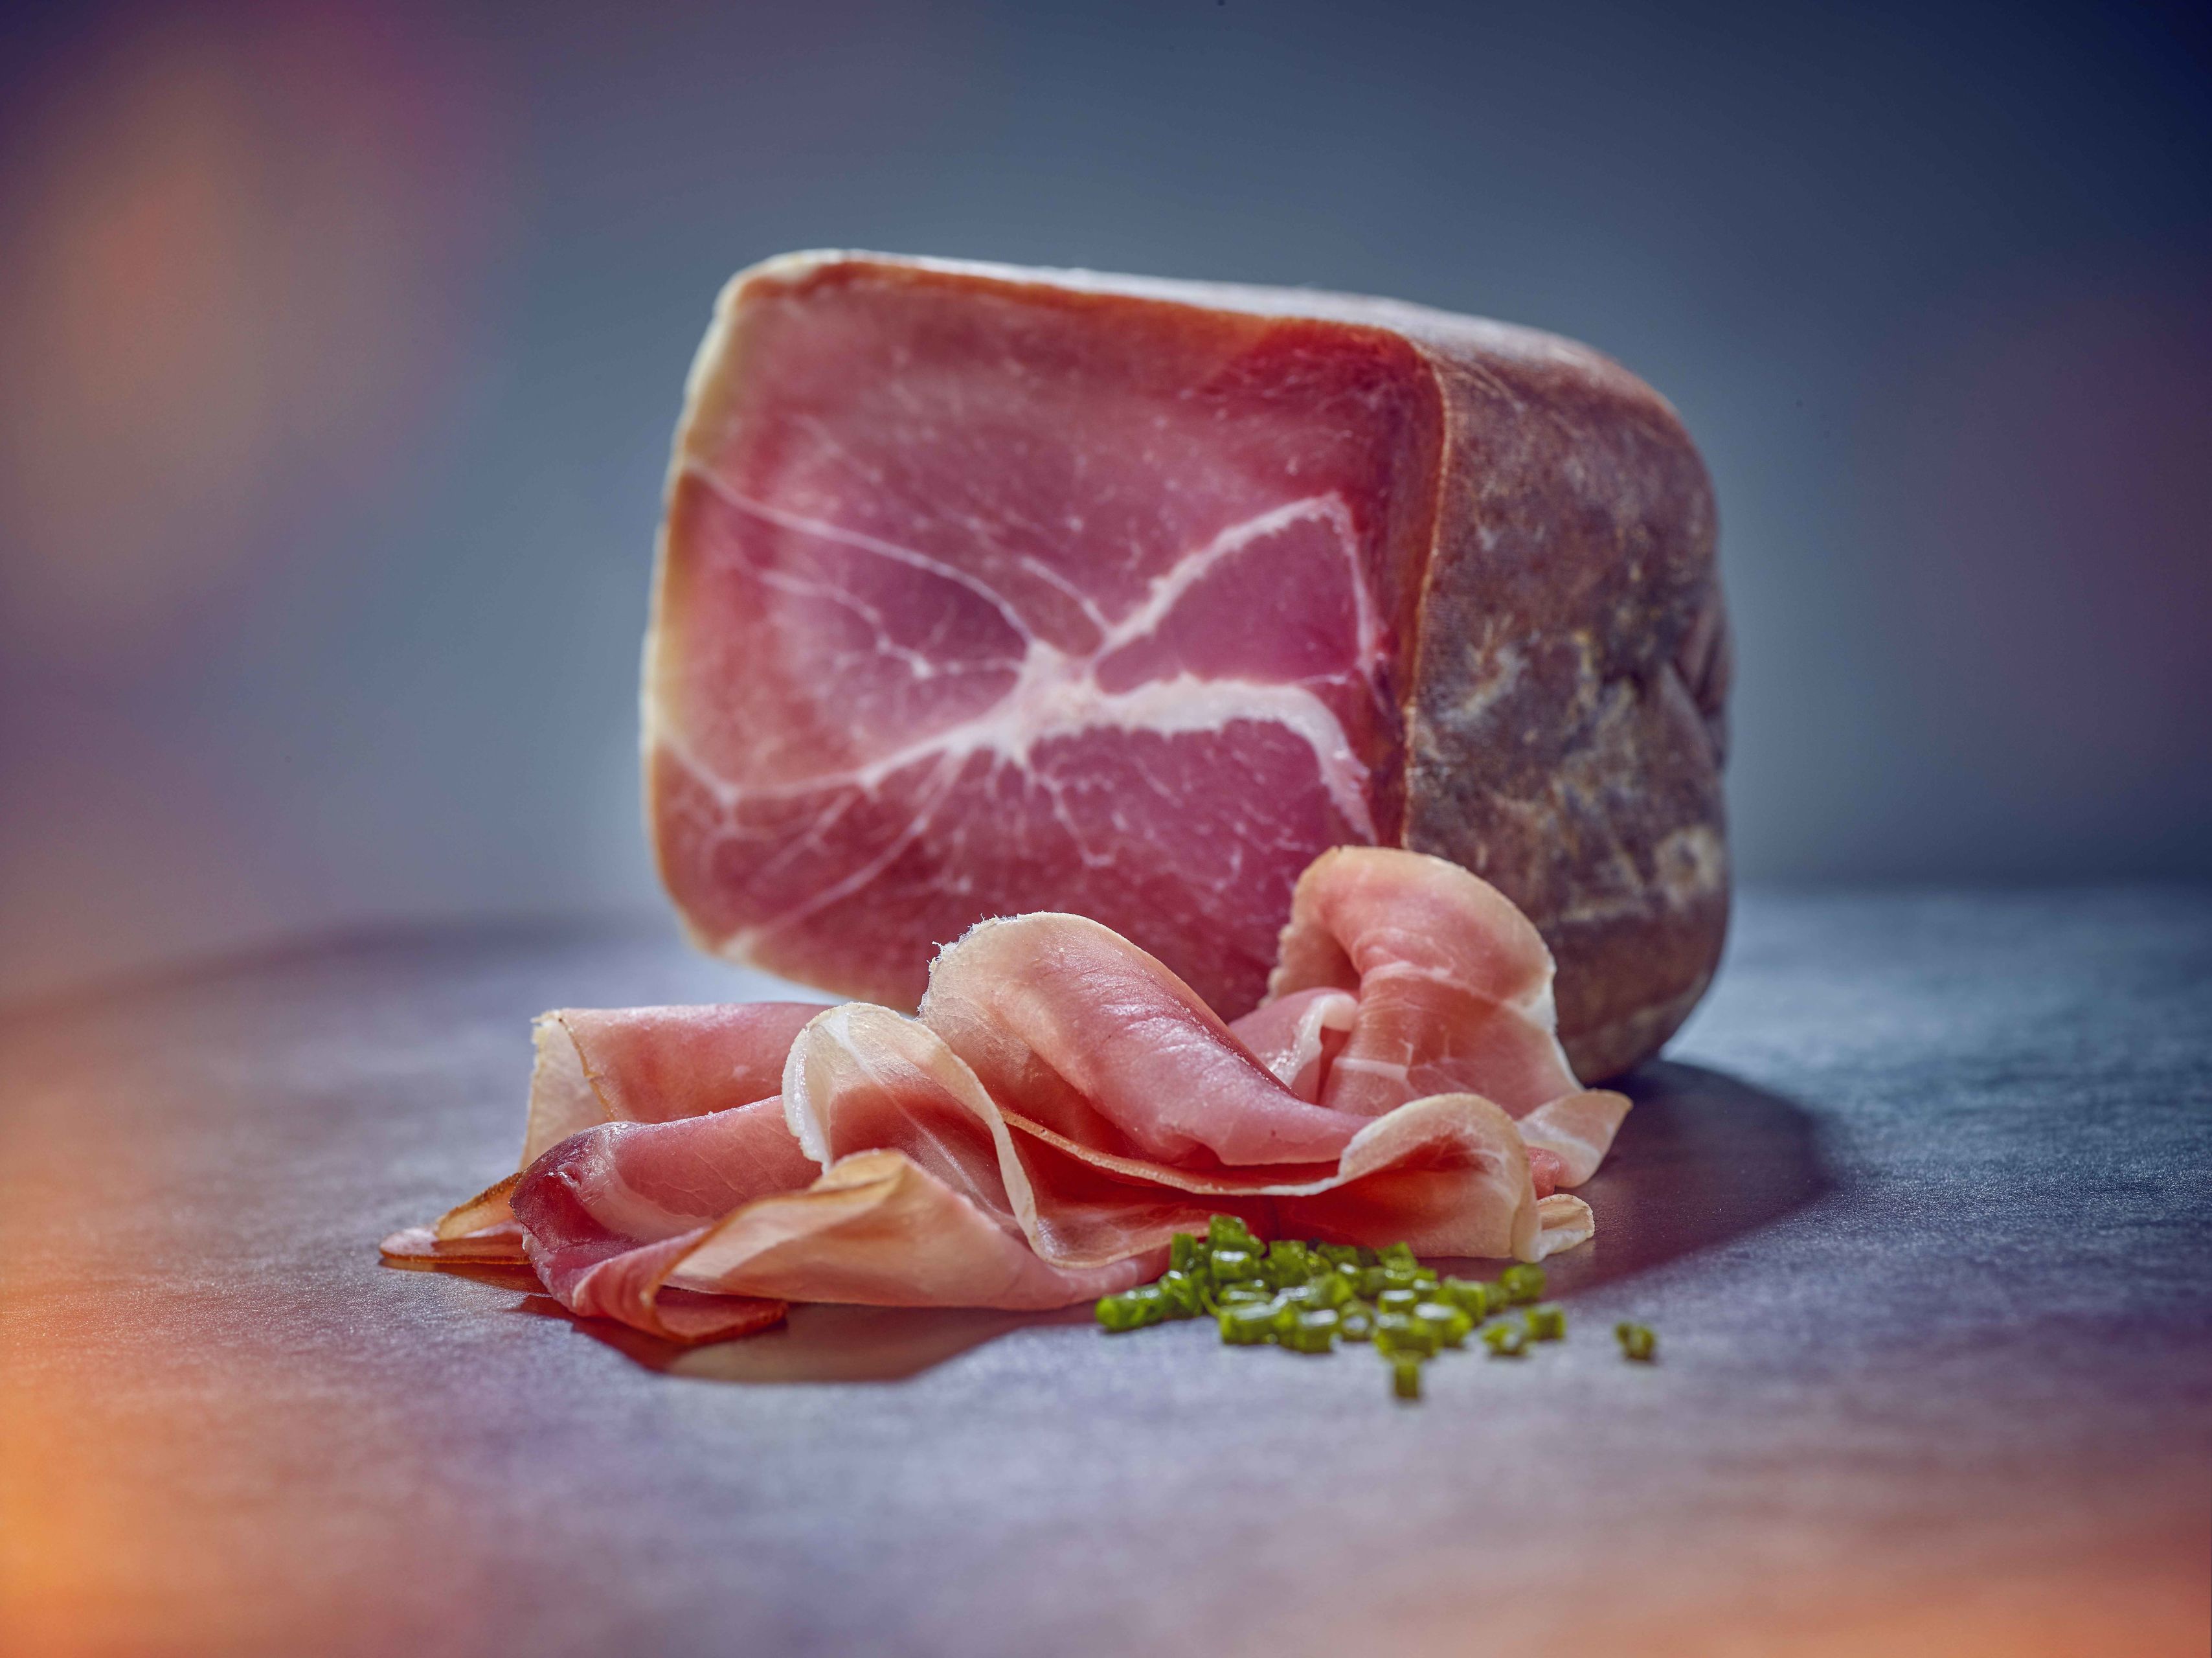 Raw ham from the Valais, Switzerland